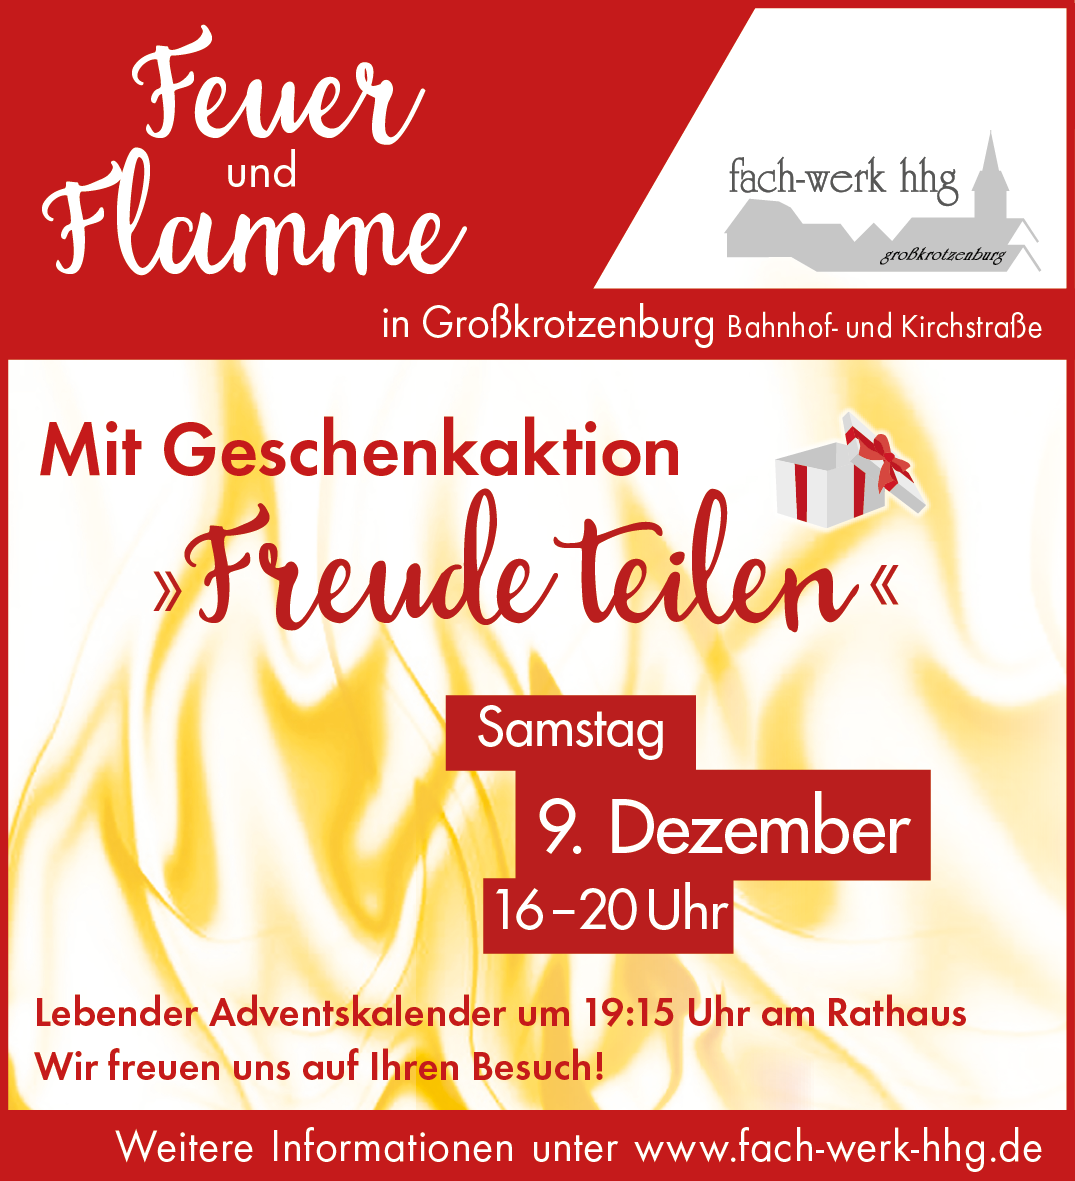 Feuer und Flamme – Aktion des fach-werk hhg am 9. Dezember 2014